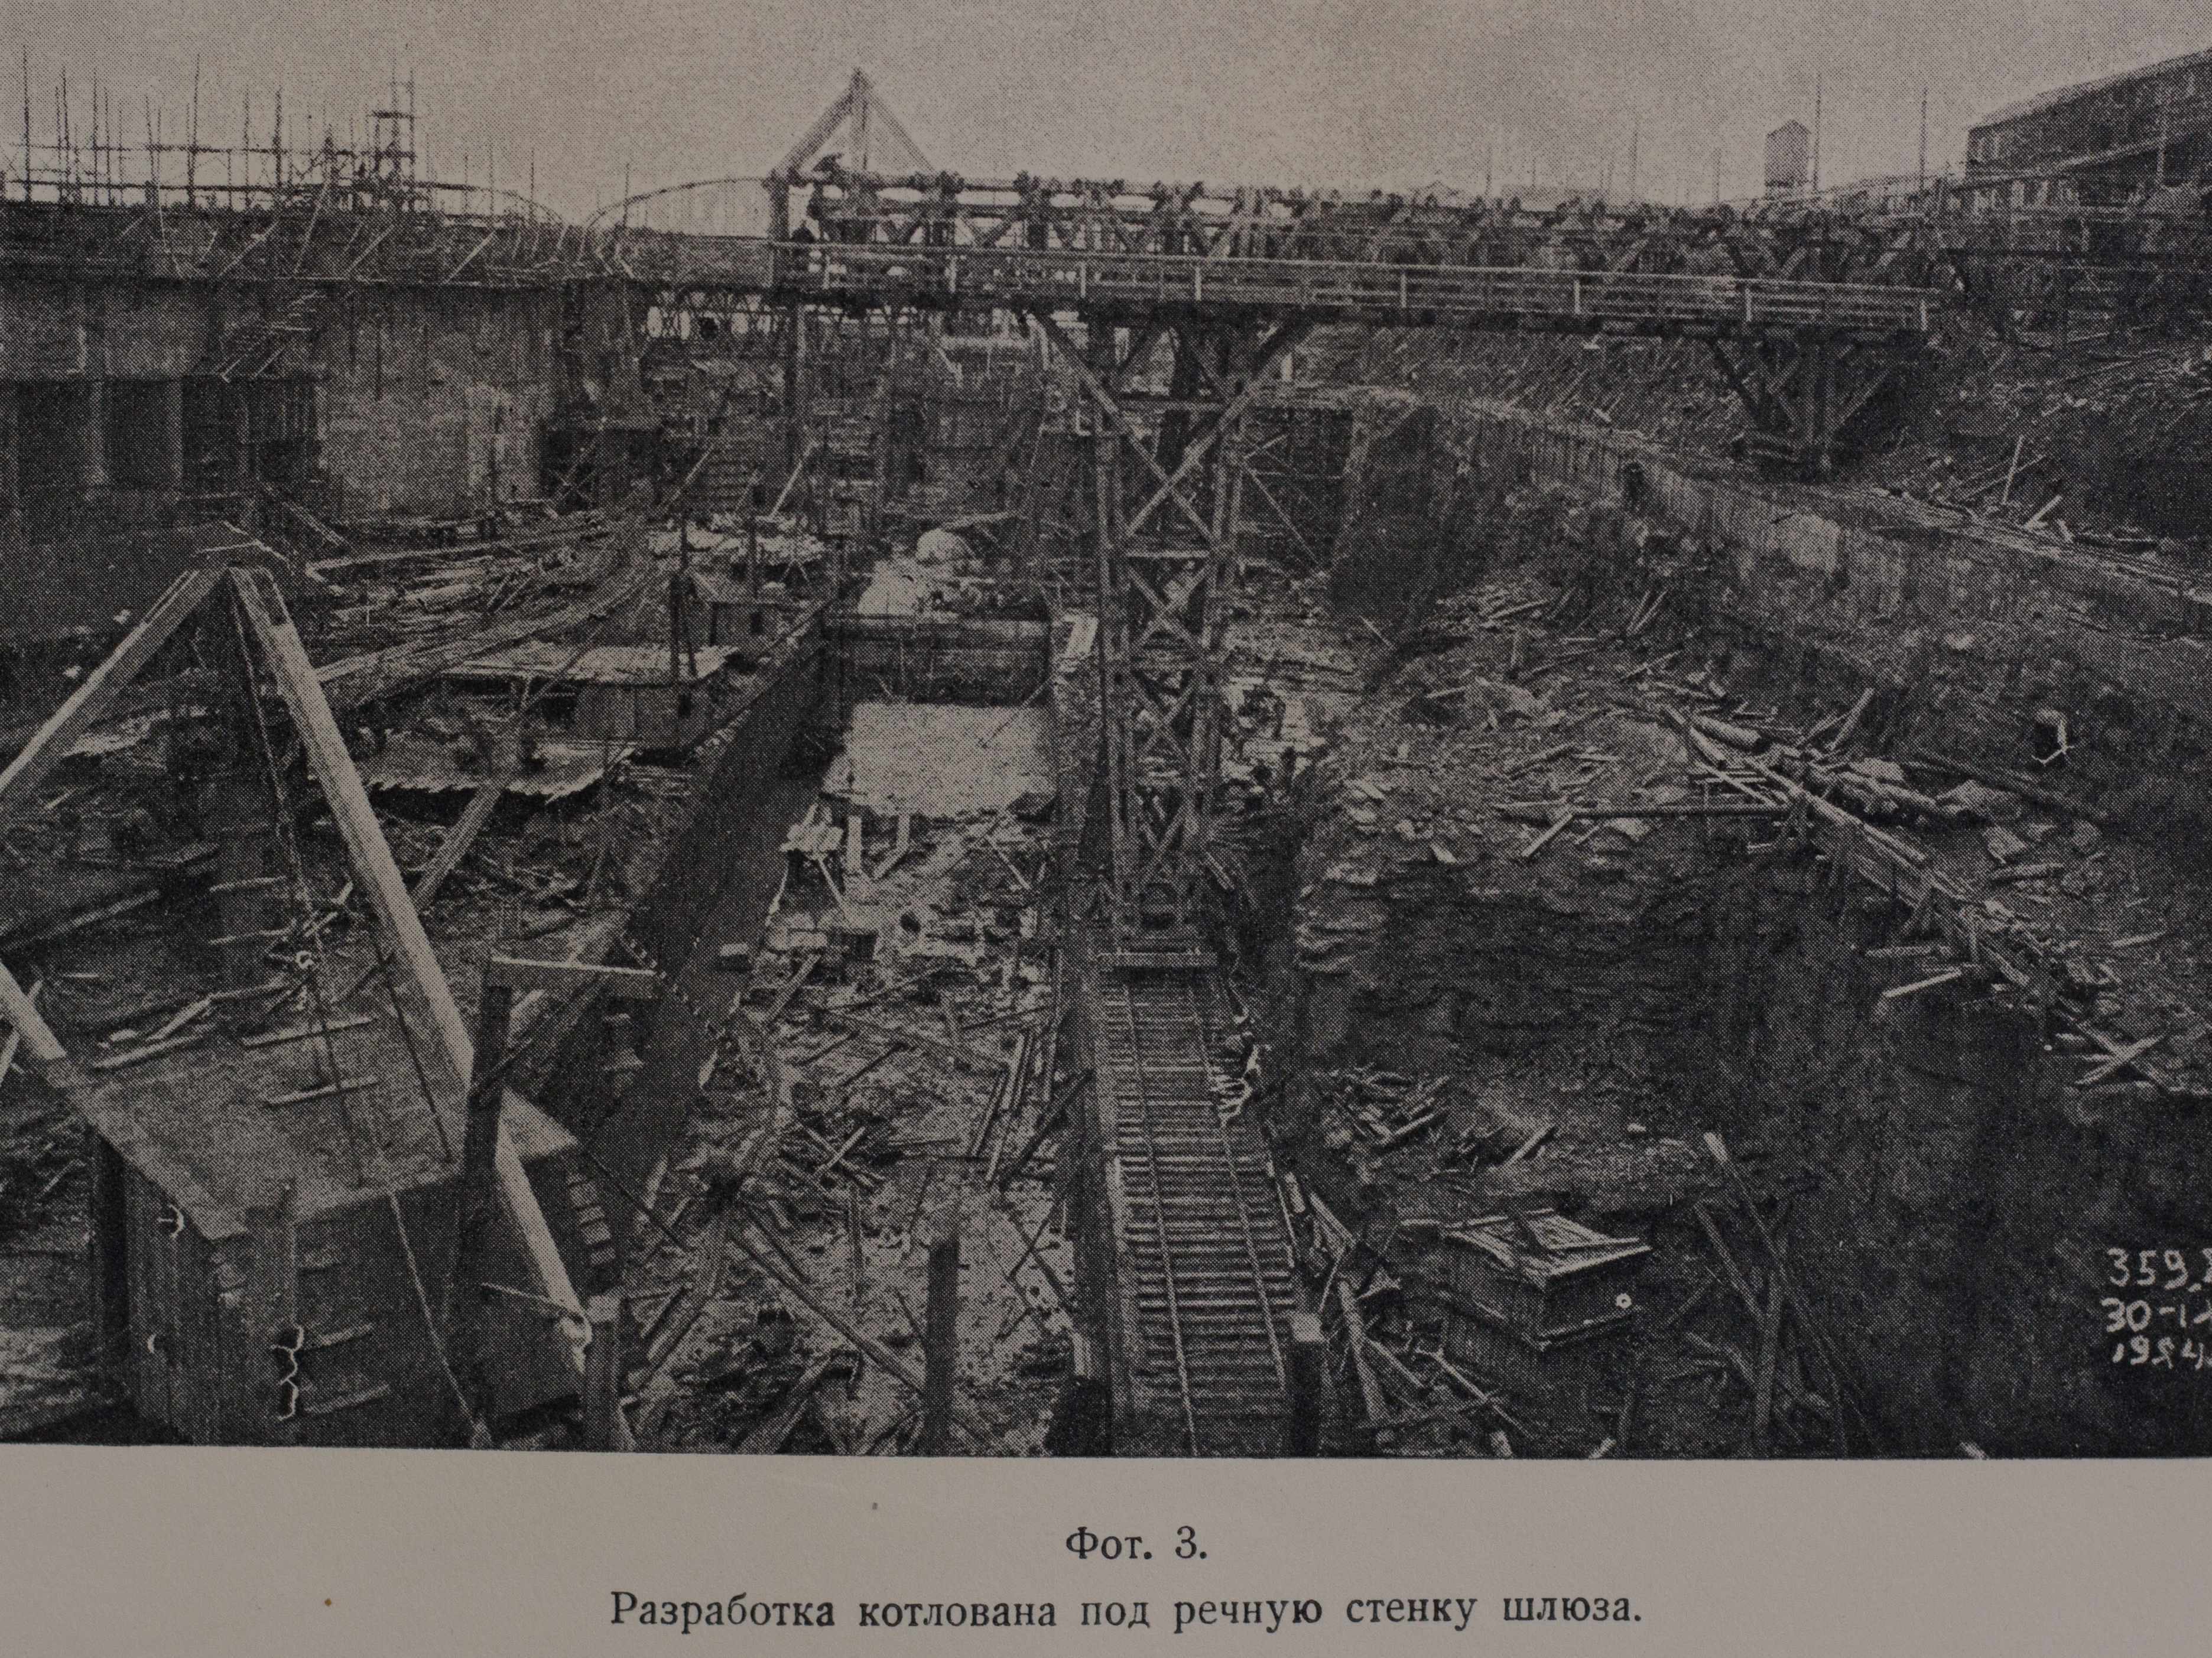 Разработка котлована под речную стенку шлюза (1924 г.)